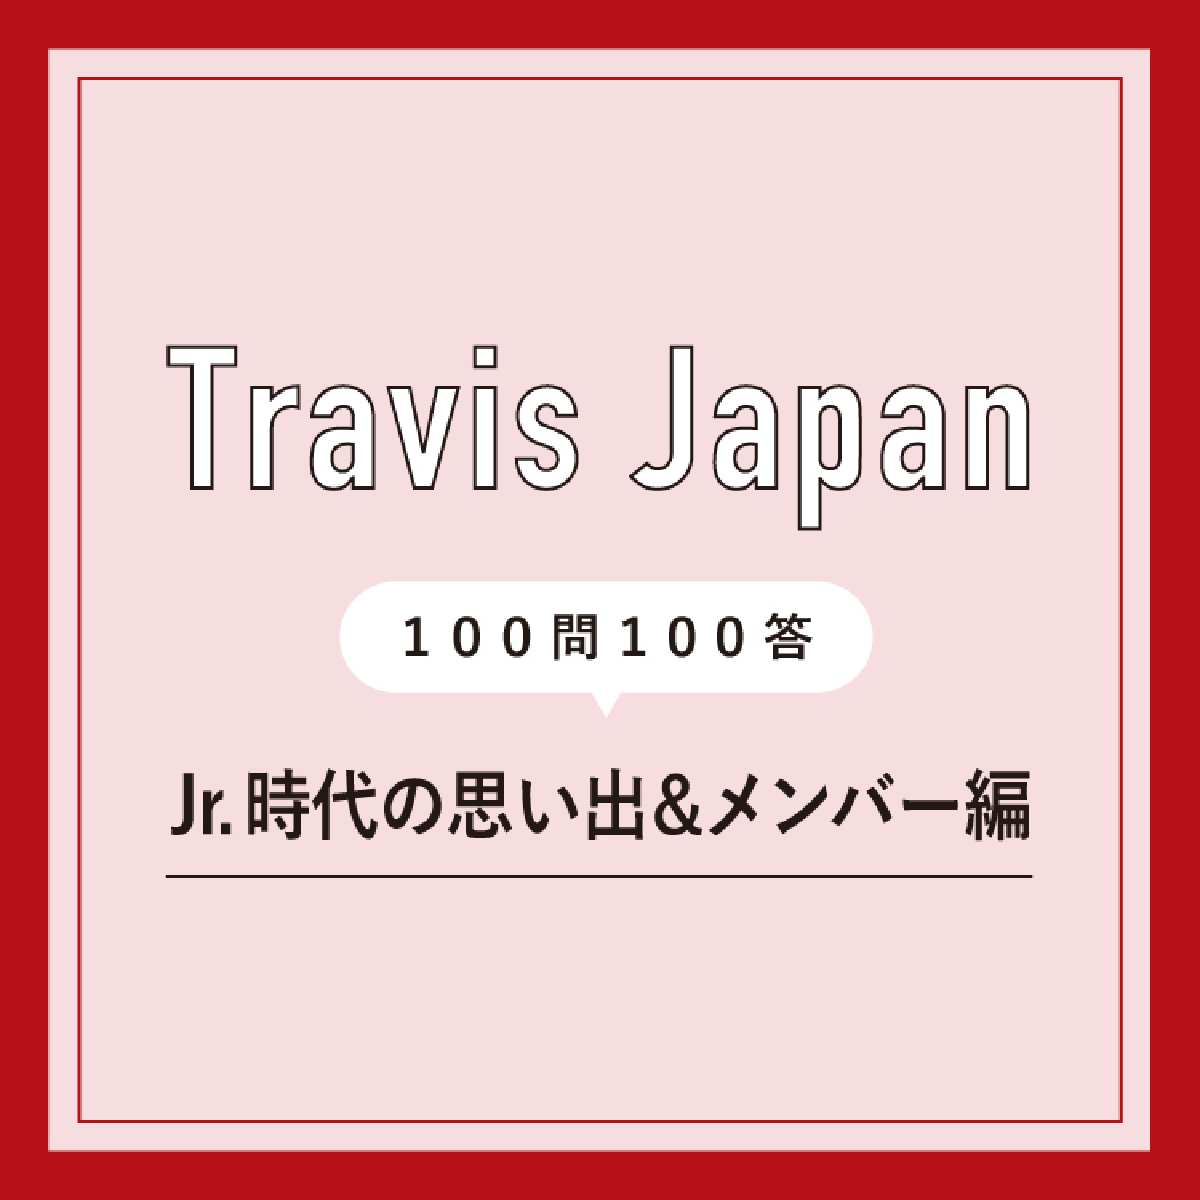 Travis Japan・松倉海斗がメンバーの中で恋人にしたいのは中村海人!?「うみは少し落ち着きが出て、一緒にいて居心地がよくなった」